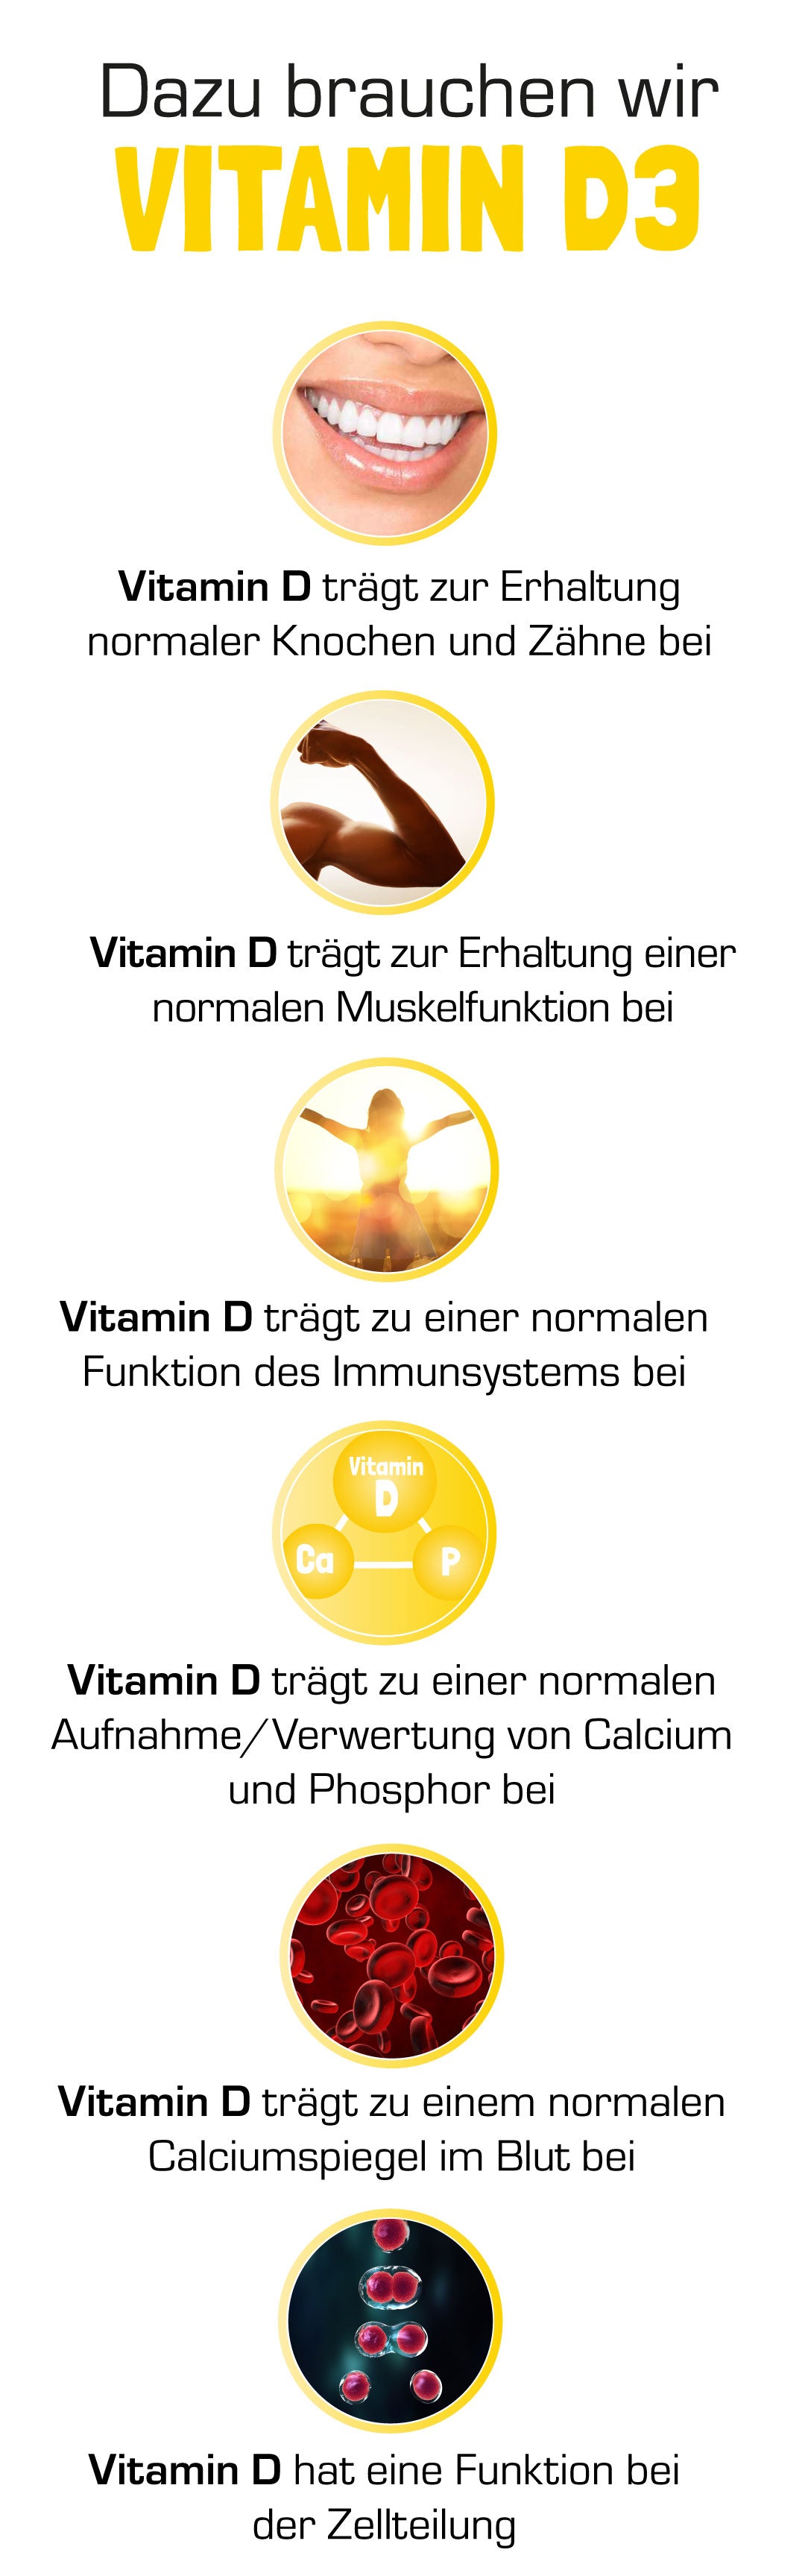 Aufgaben Vitamin C